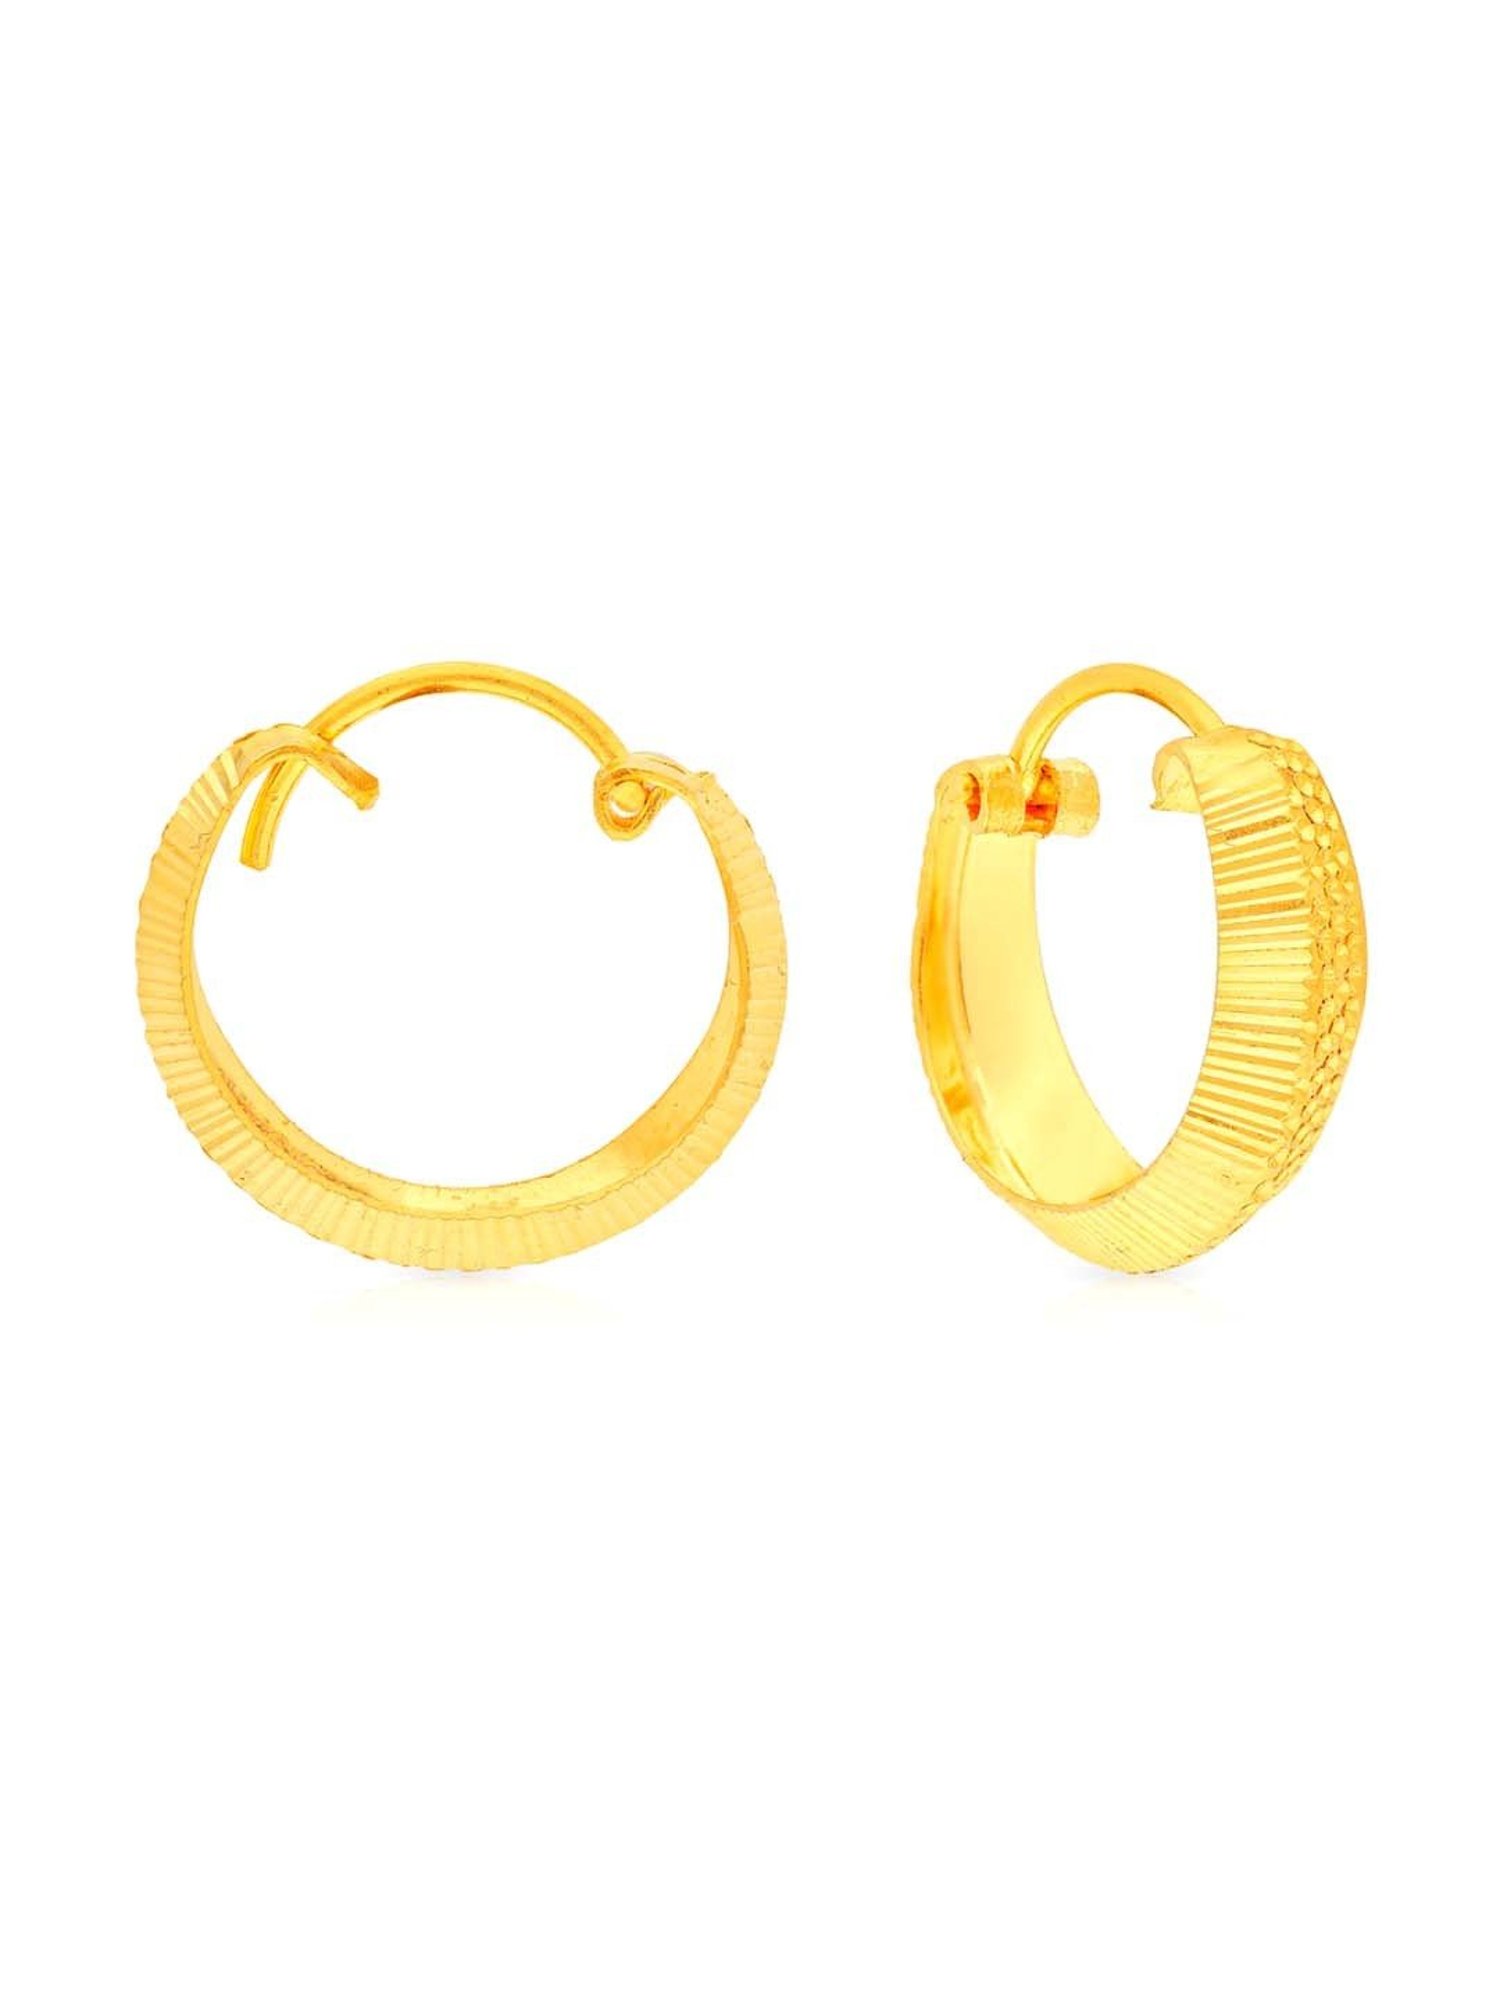 Gold Hoop Earrings  Gold hoop earrings Big hoop earrings Hoop earrings  small